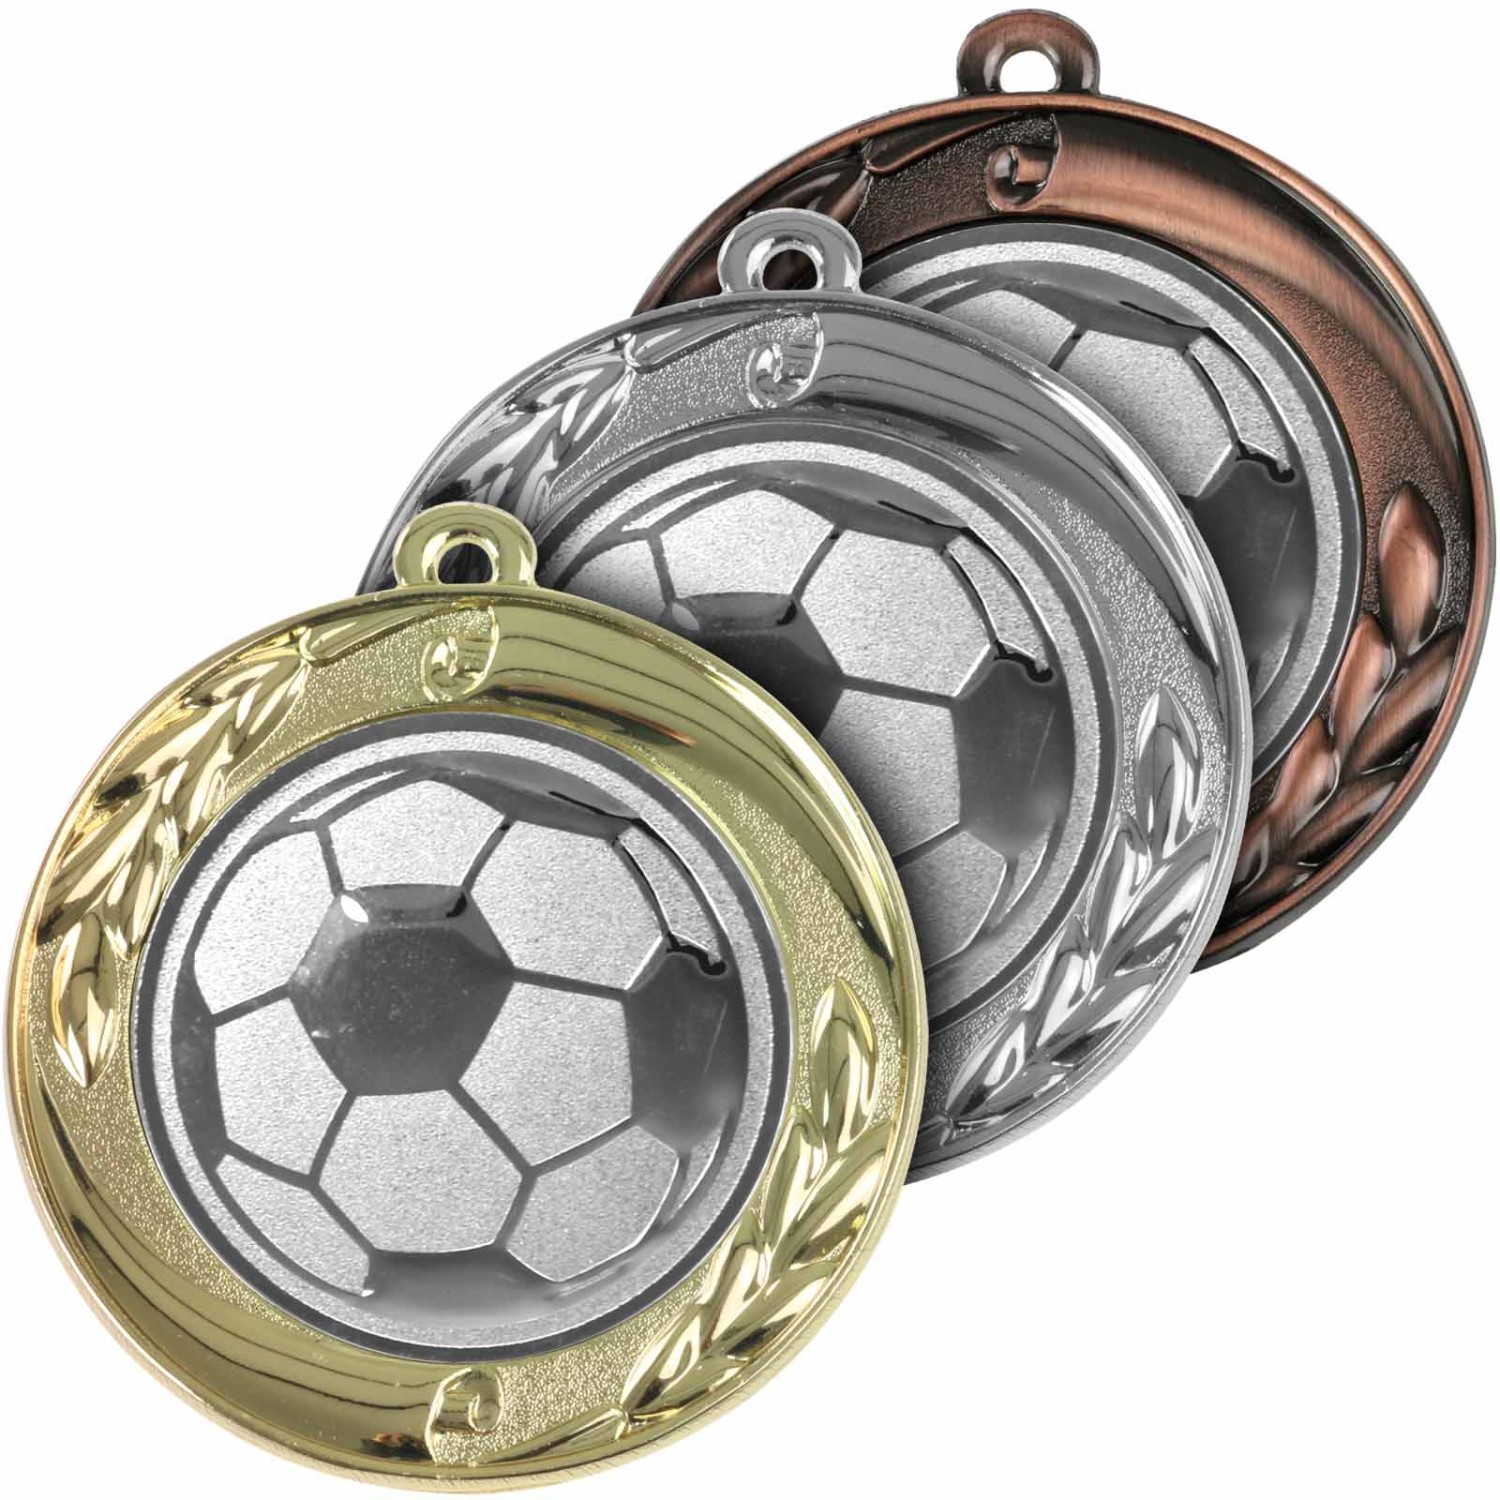 Fußball Medaille mit Etui zum Aufstellen gold silber bronze 70mm Metall (Sorte: Set je 1x gold / silber / bronze)